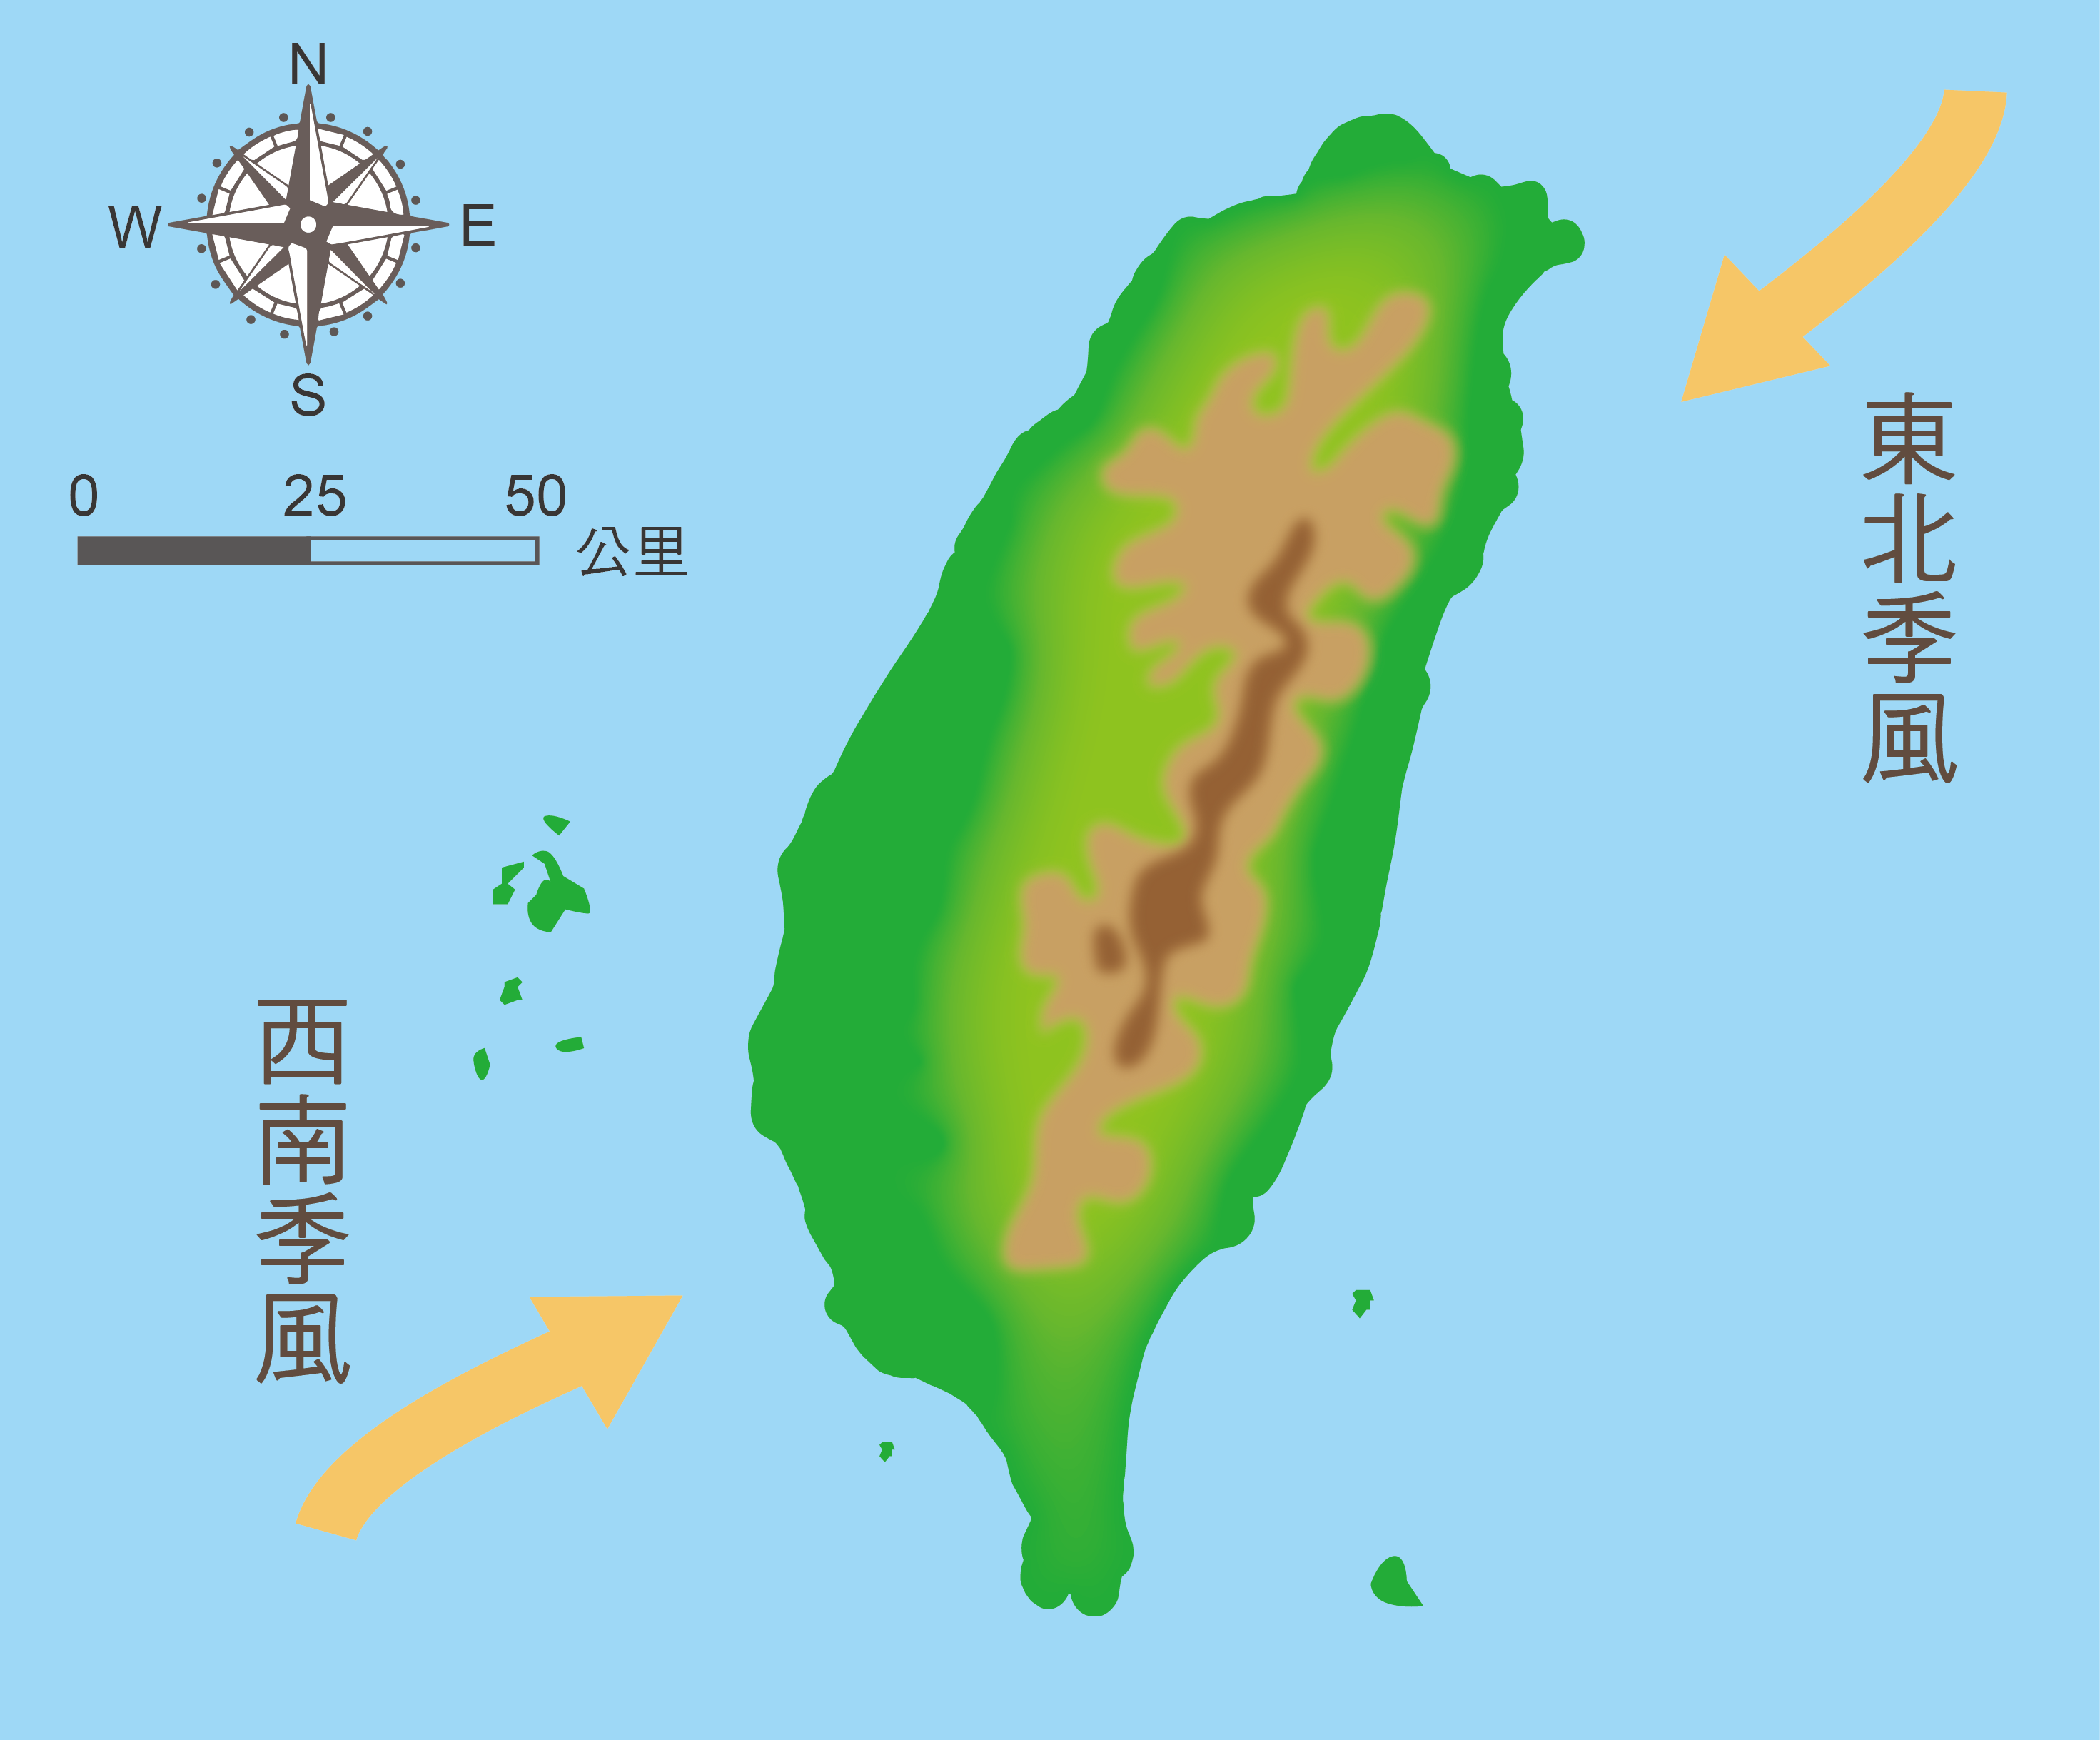 臺灣夏天吹西南季風，冬天吹東北季風。